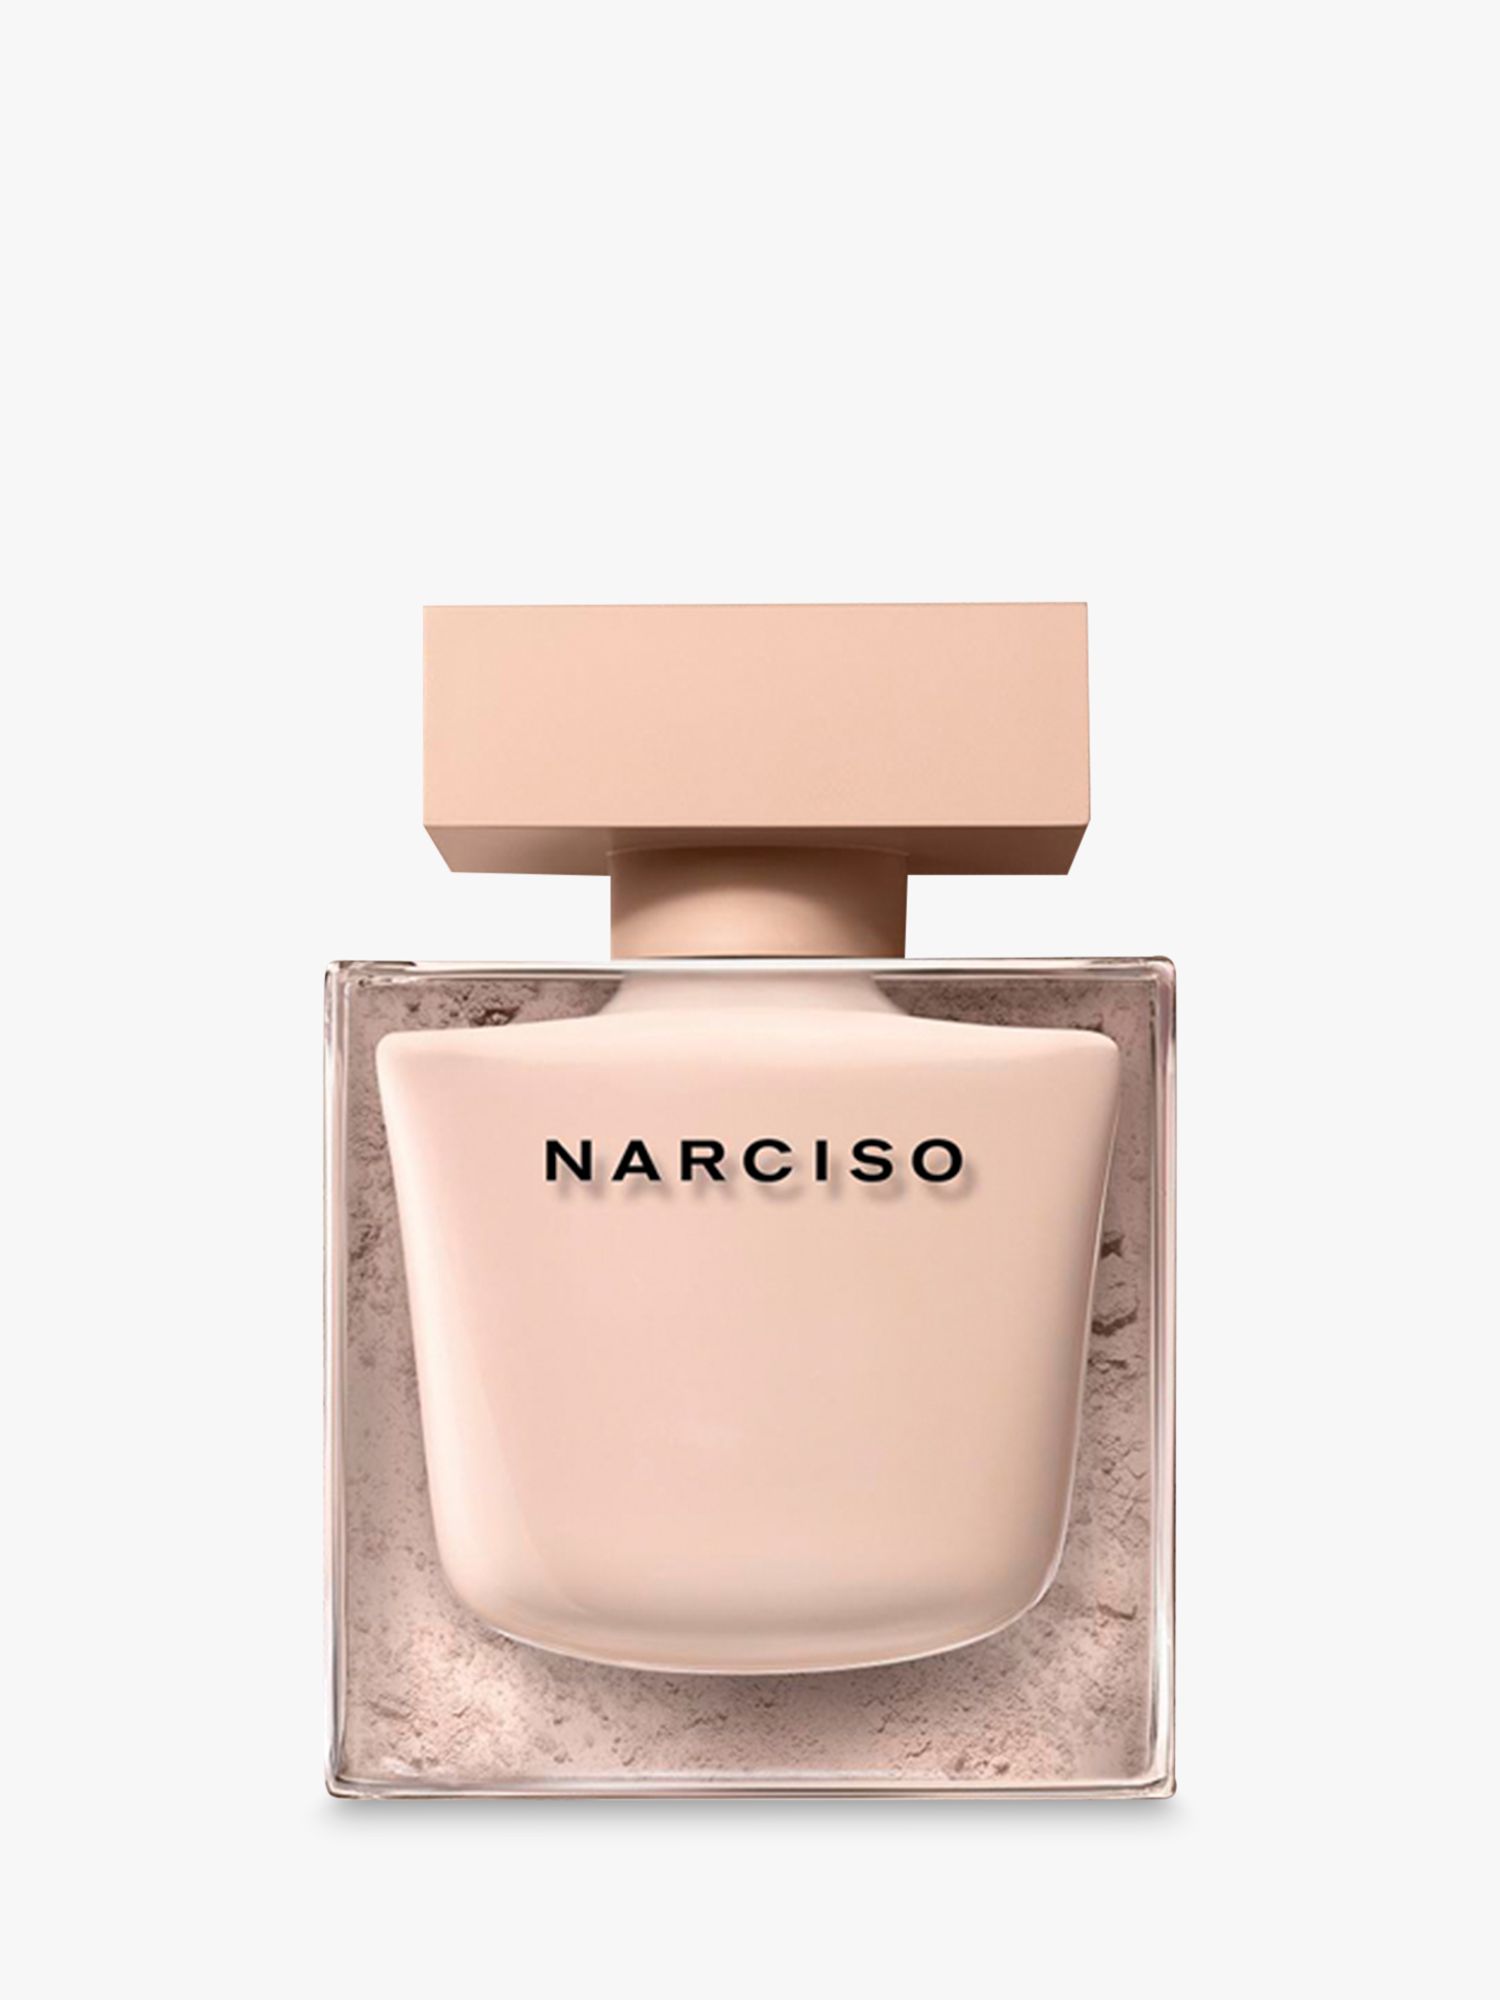 Narciso Rodriguez NARCISO Poudrée Eau de Parfum, 30ml 4